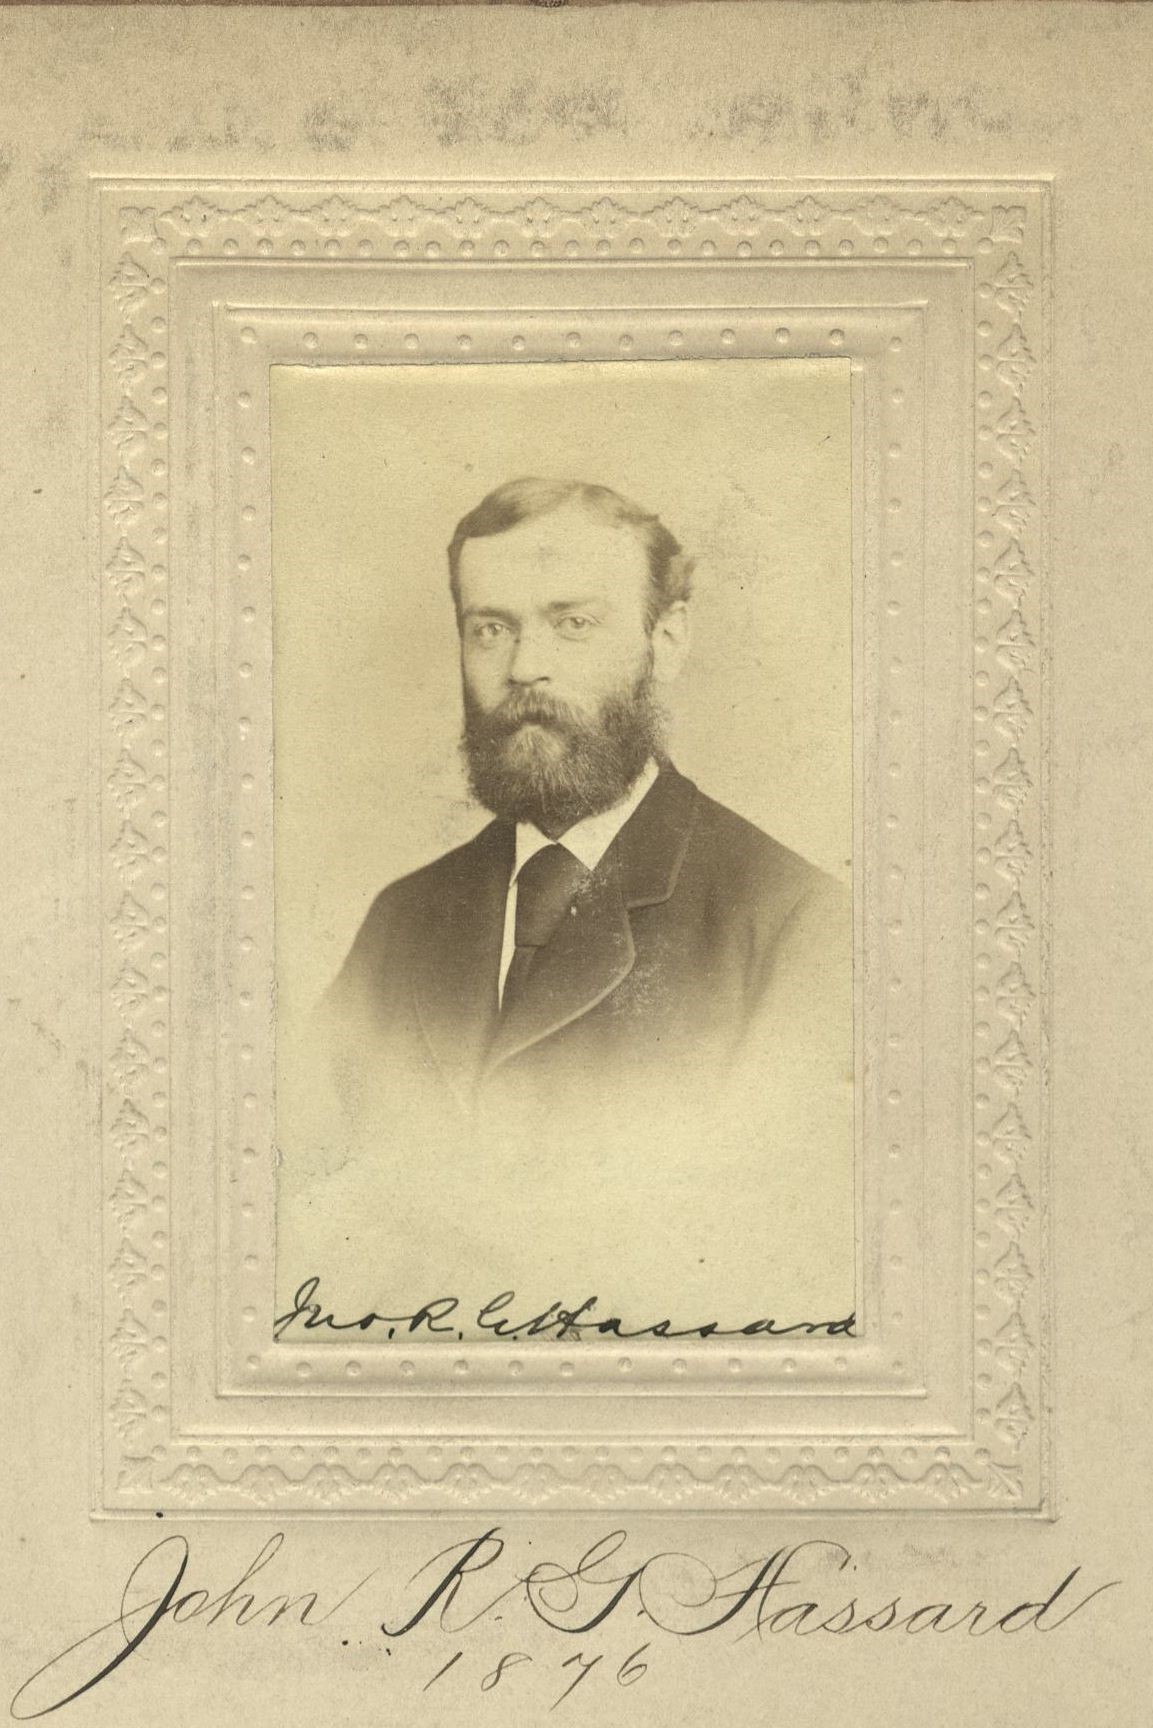 Member portrait of John R. G. Hassard